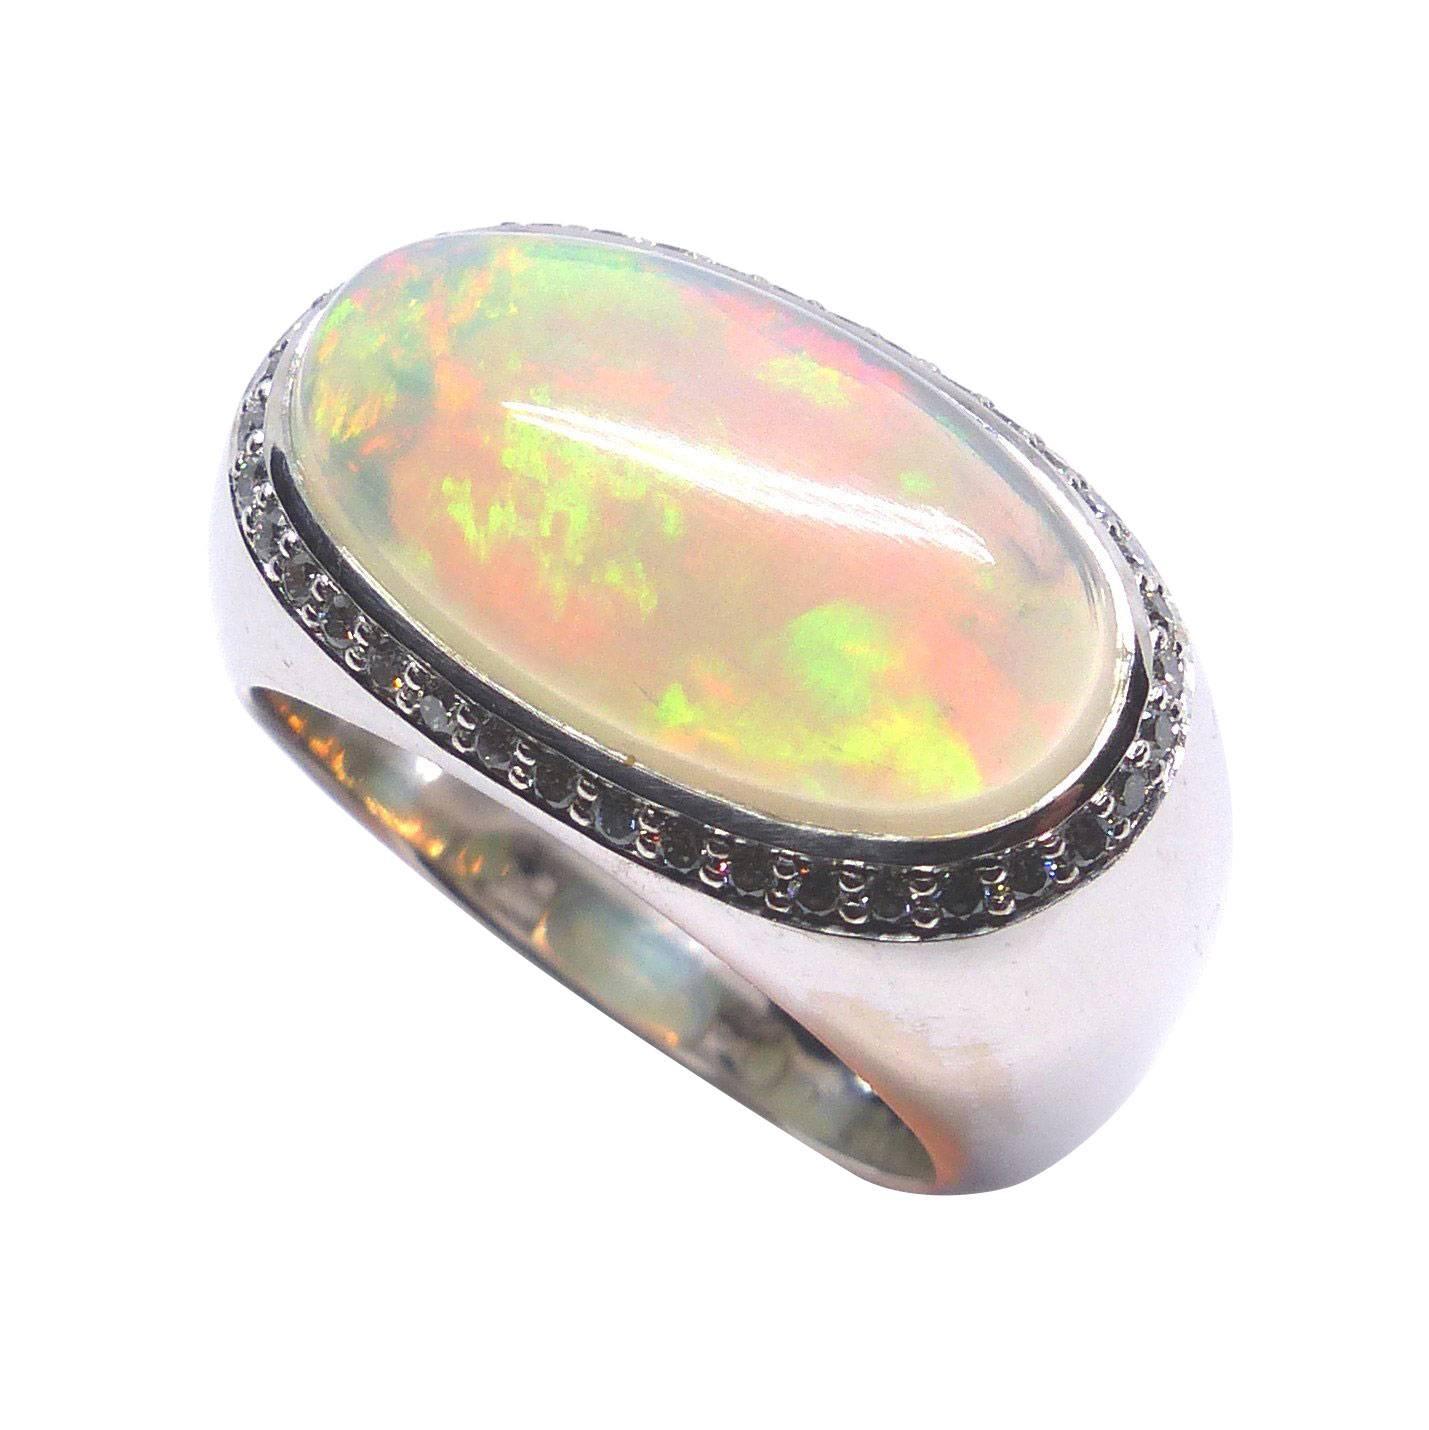 Leyser "Calypso" 18k White Gold Opal Ring